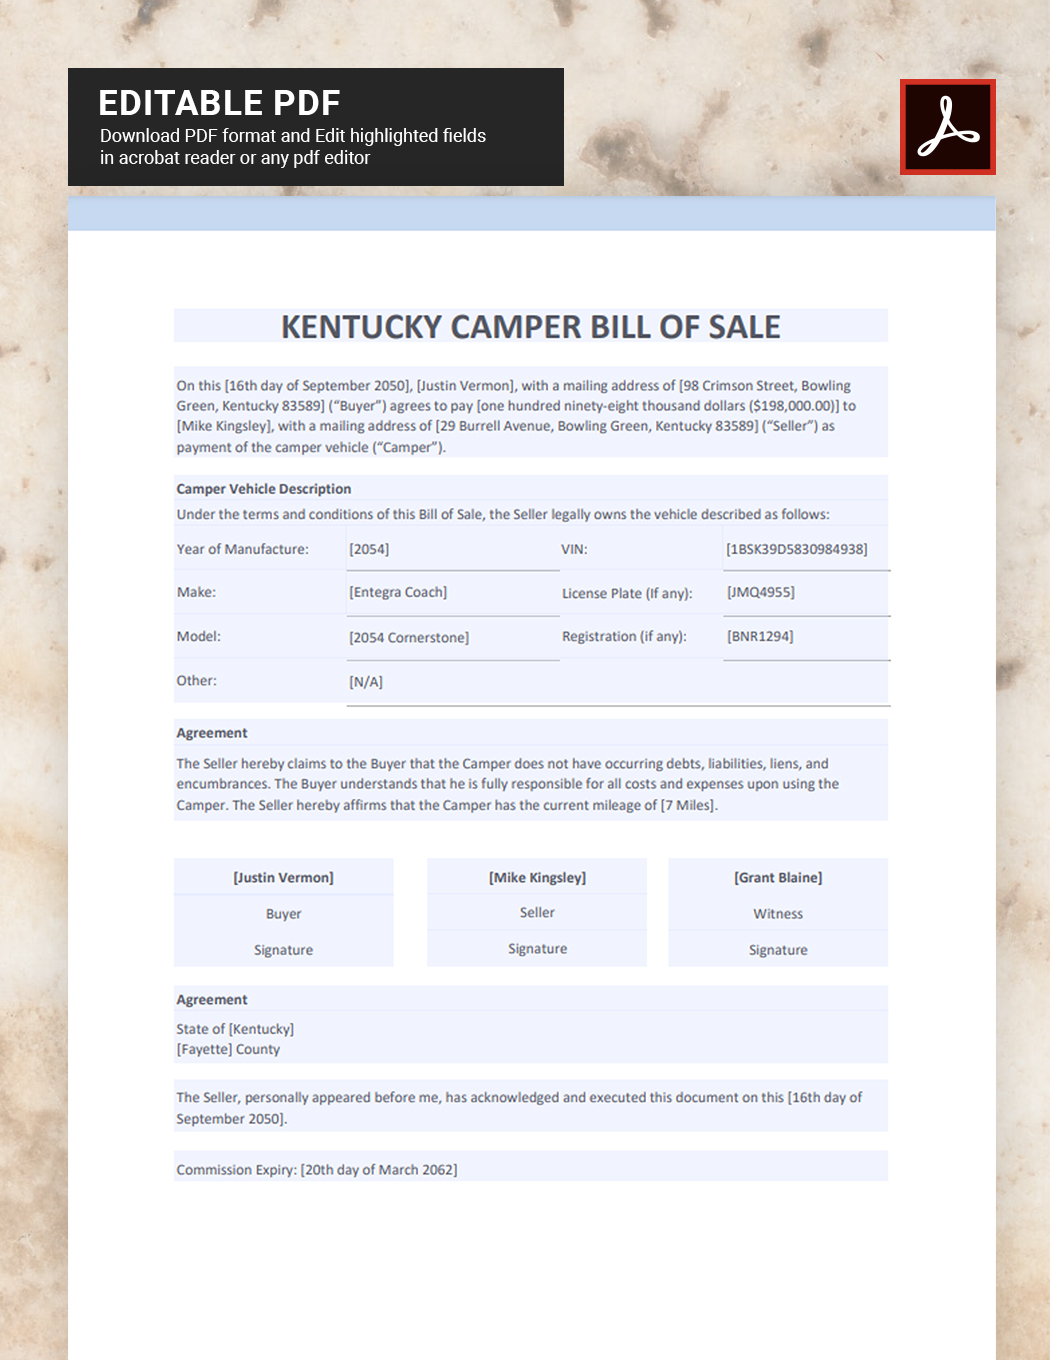 Kentucky Camper Bill of Sale Template